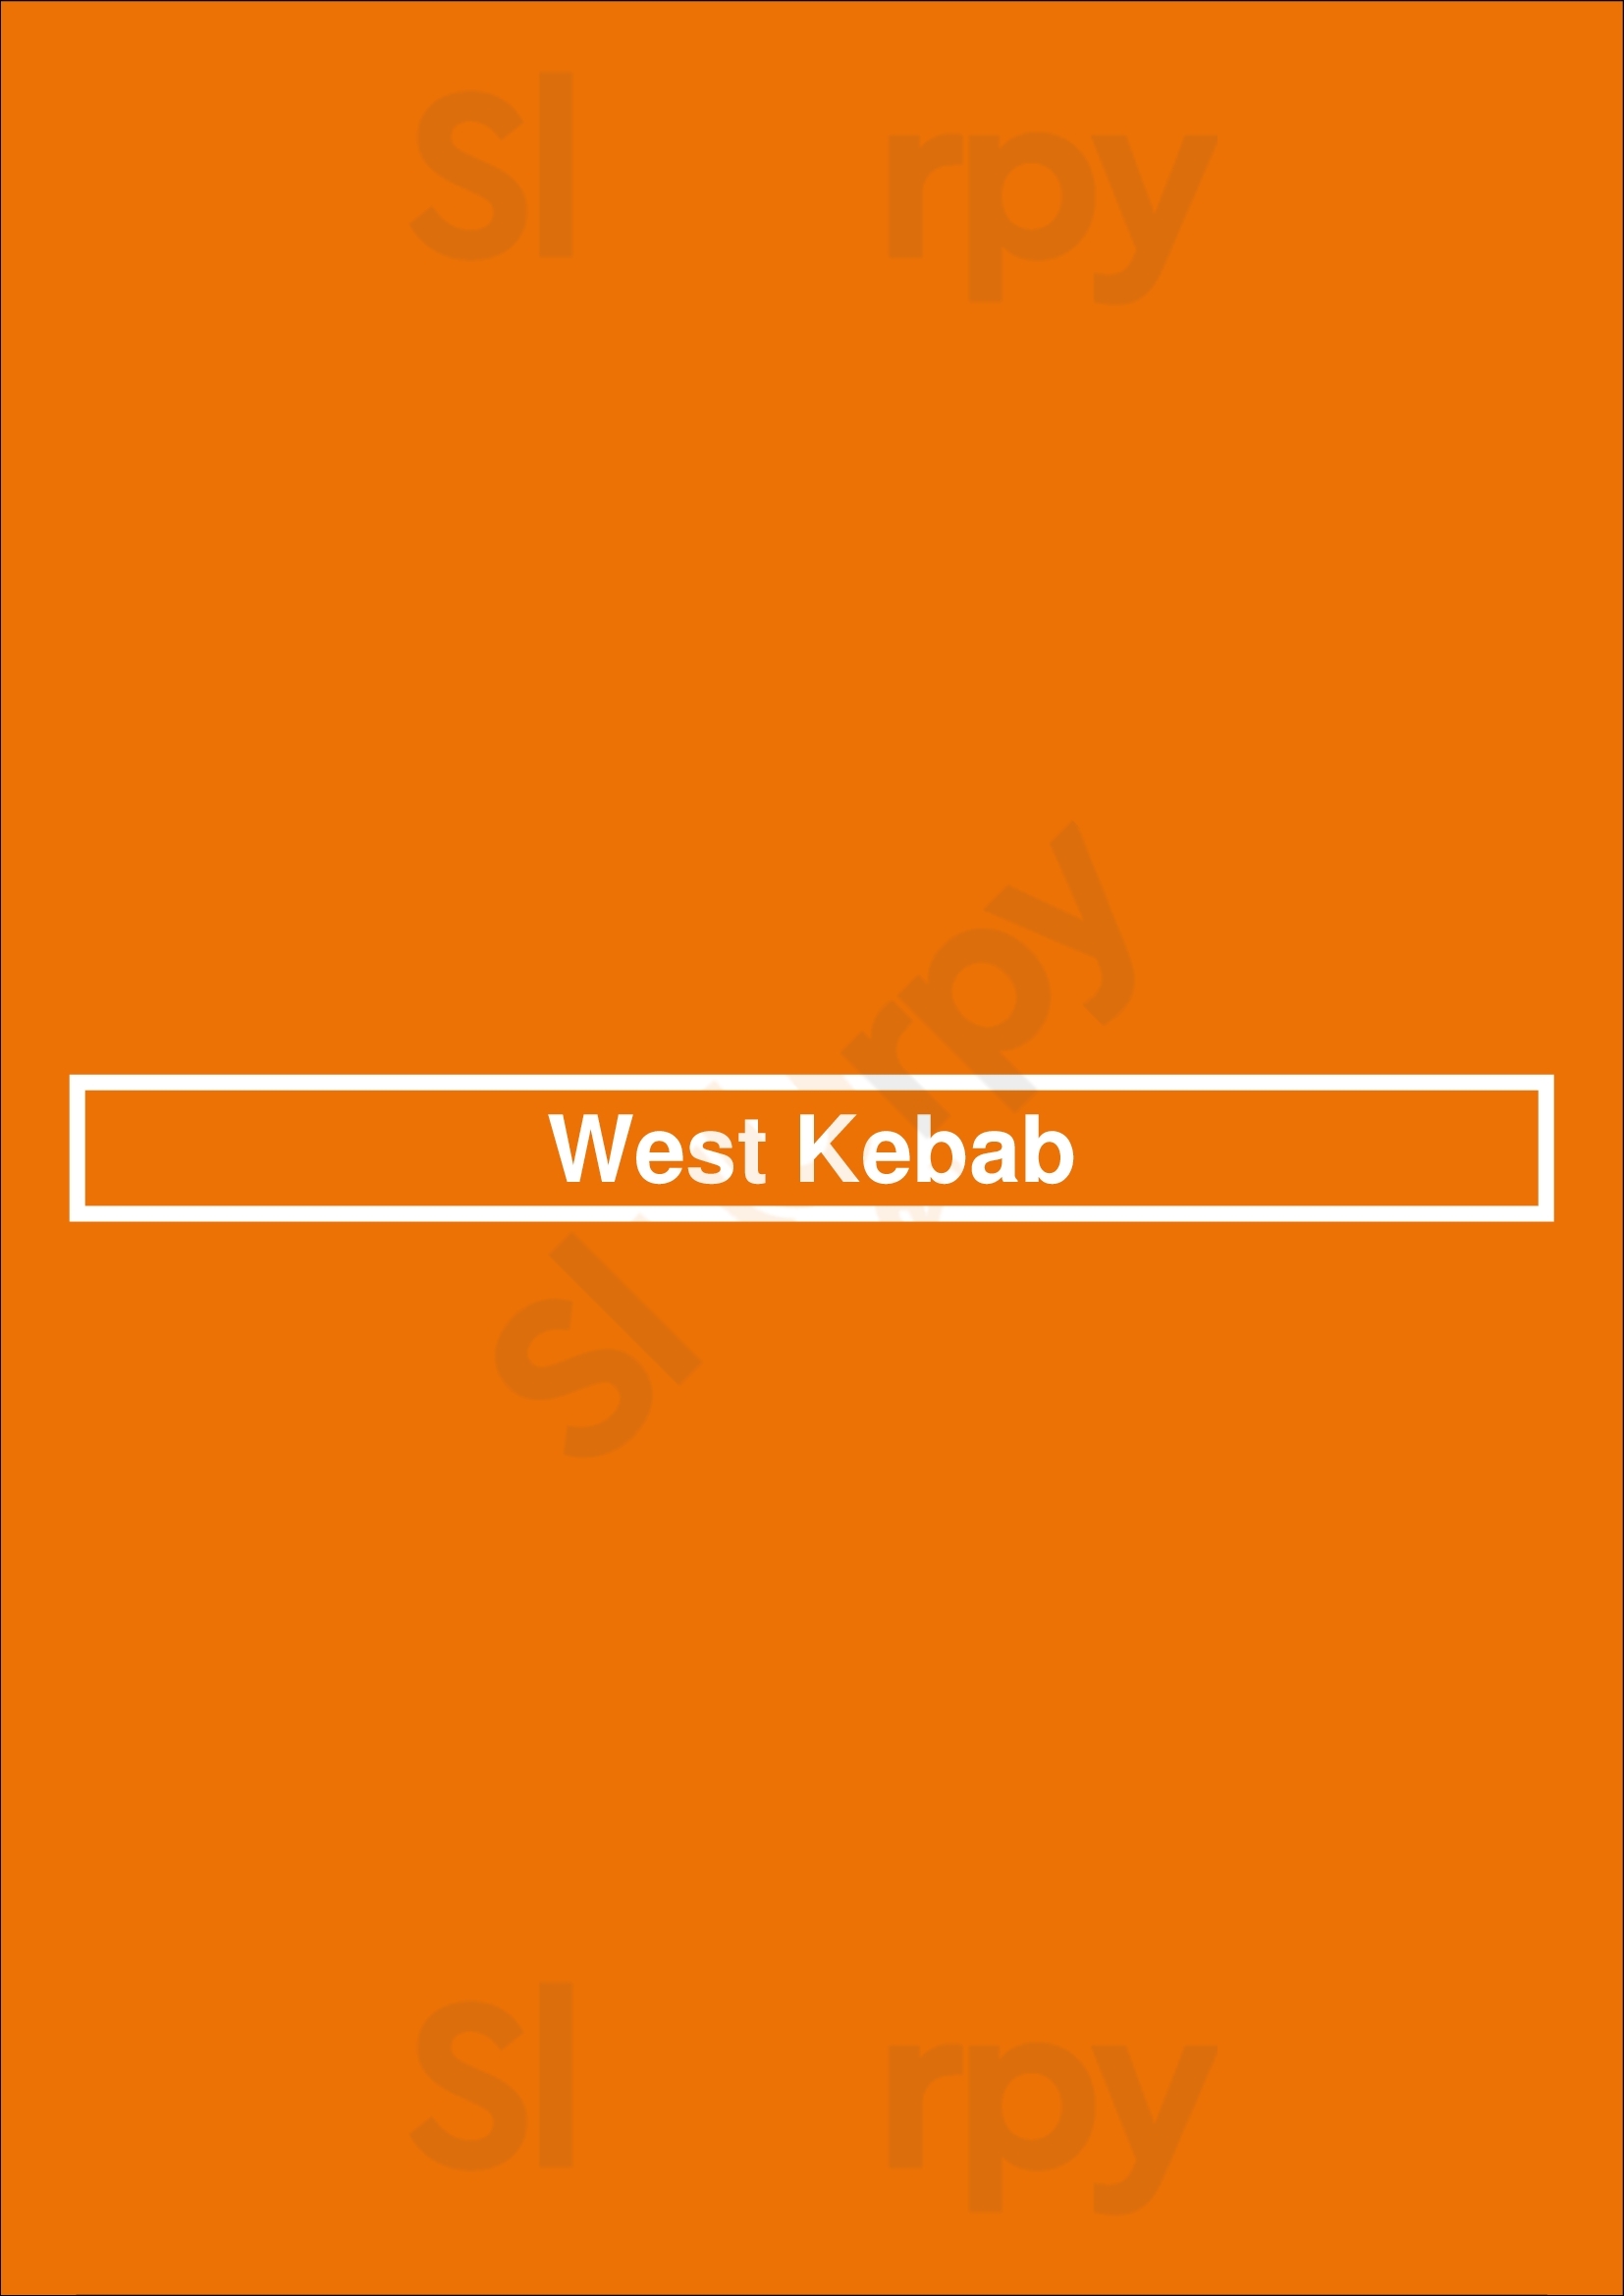 West Kebab London Menu - 1